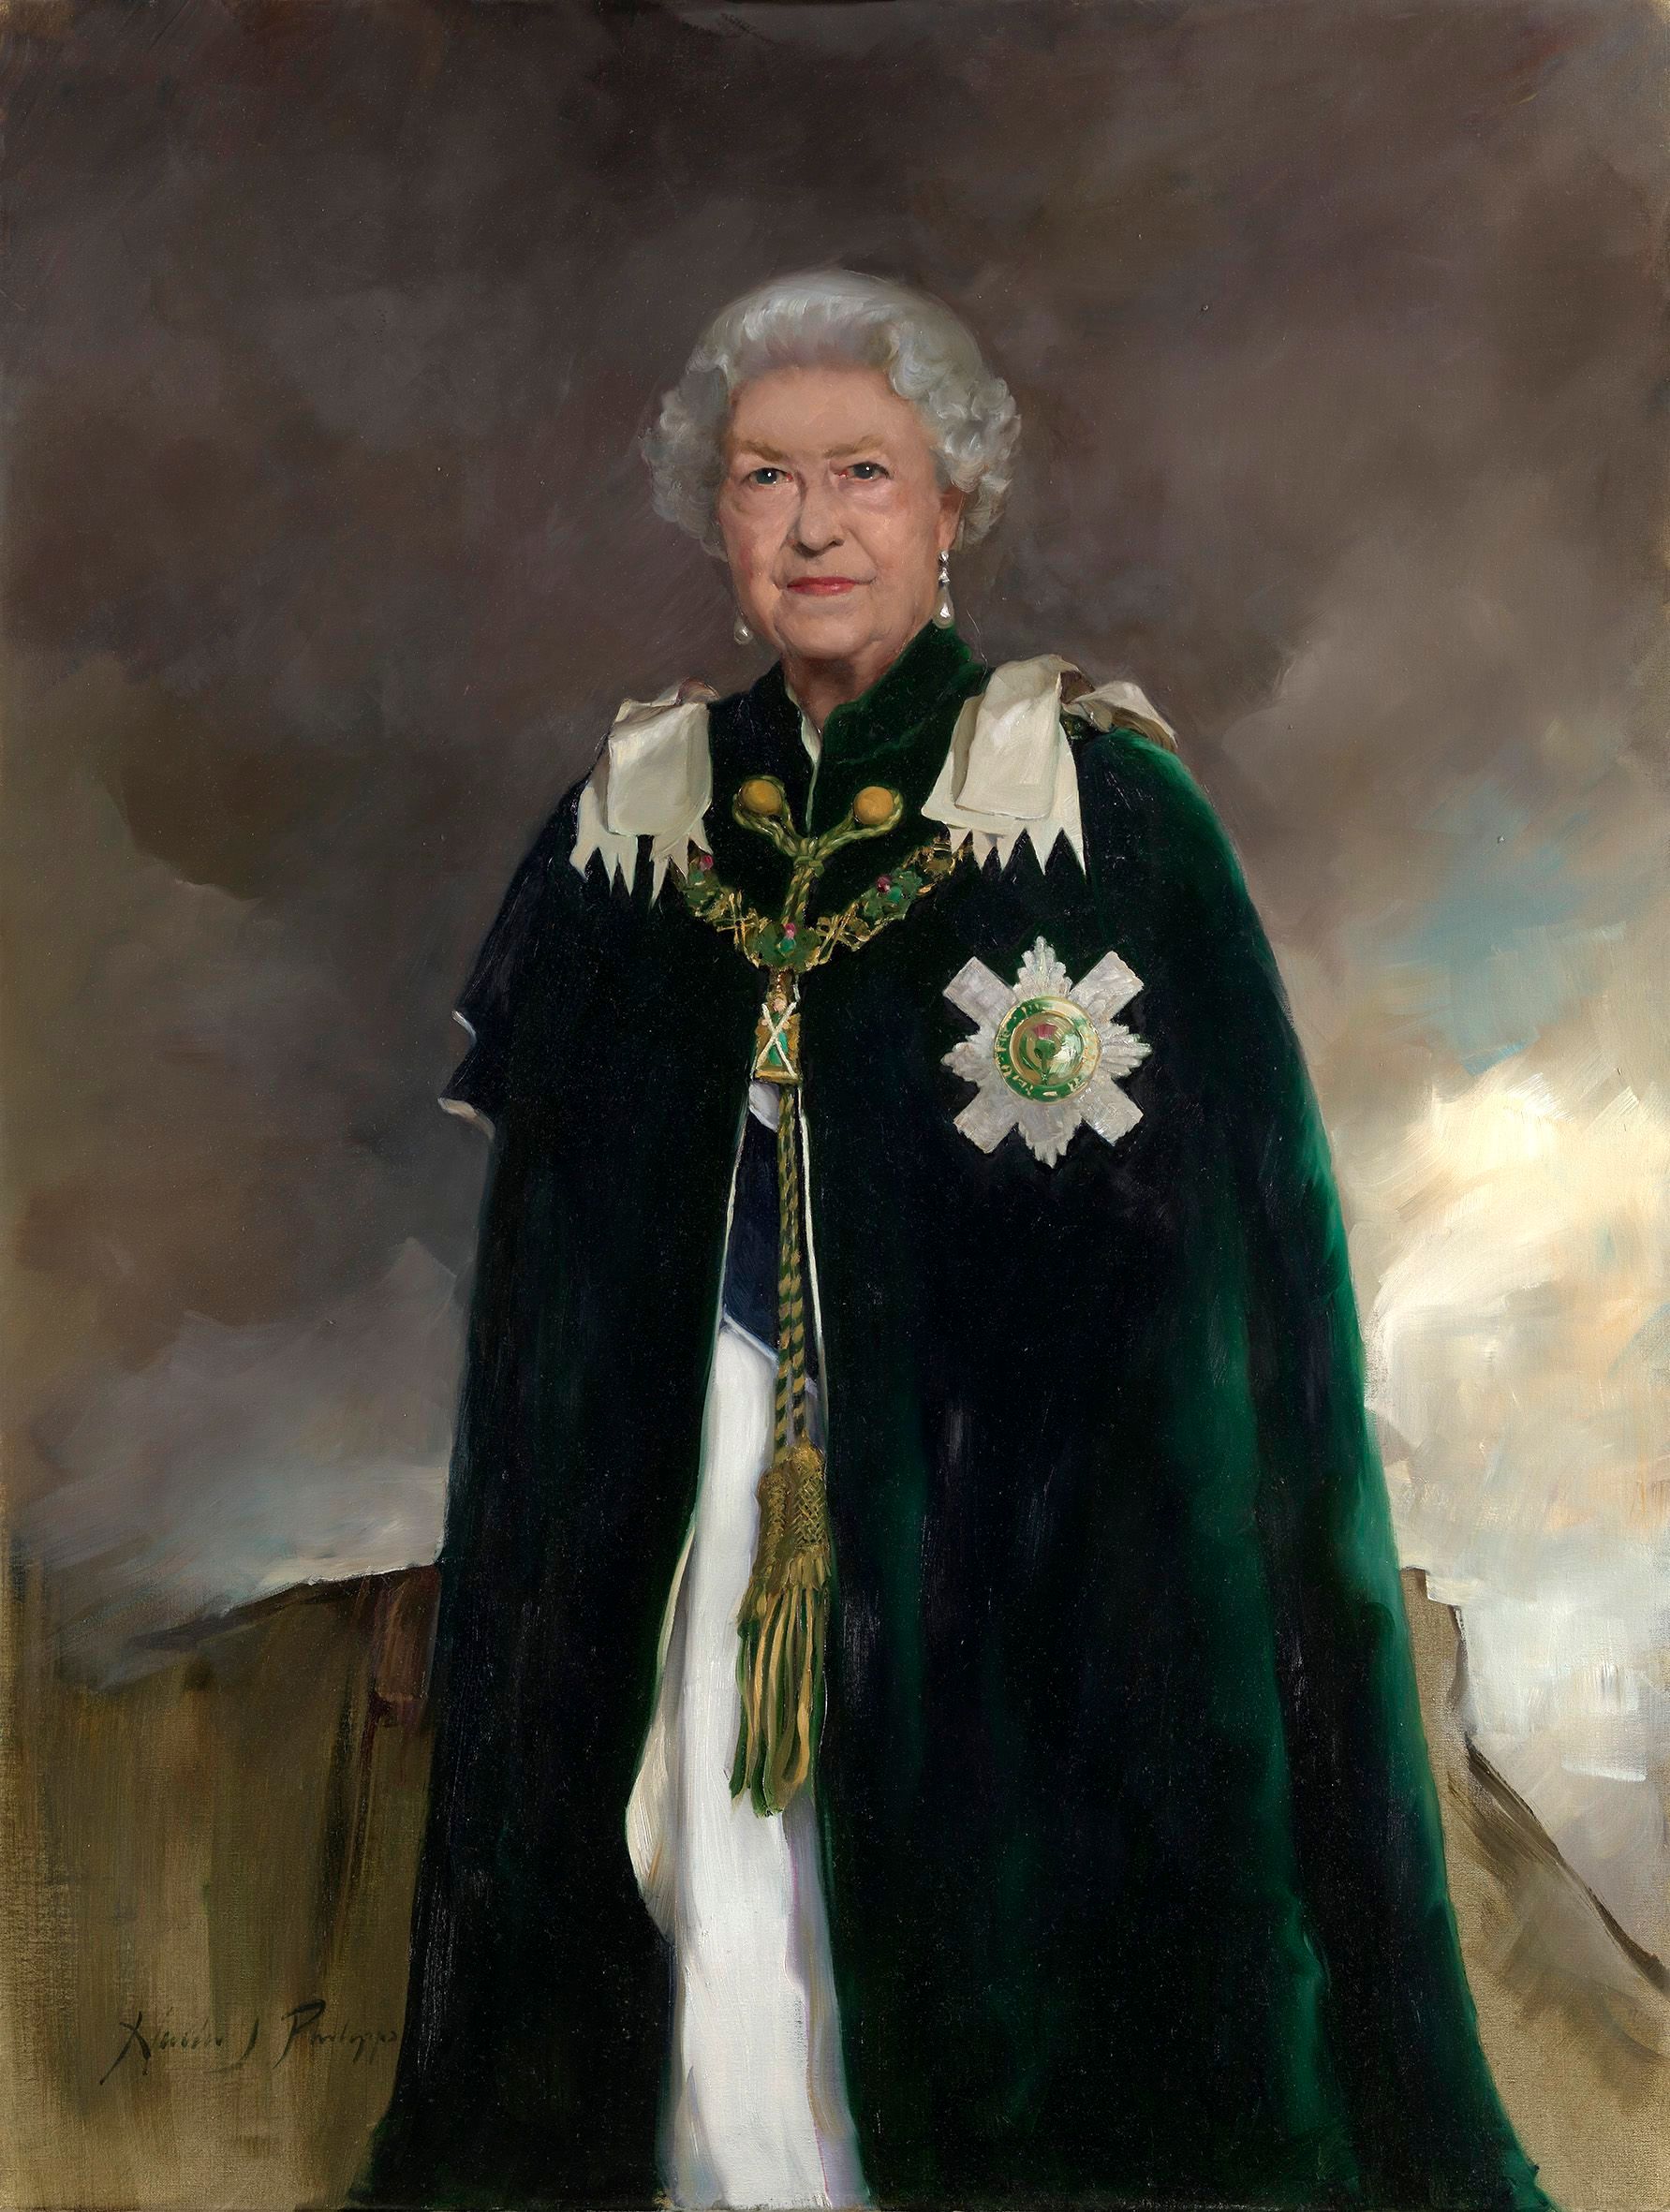 New painting of Queen Elizabeth II